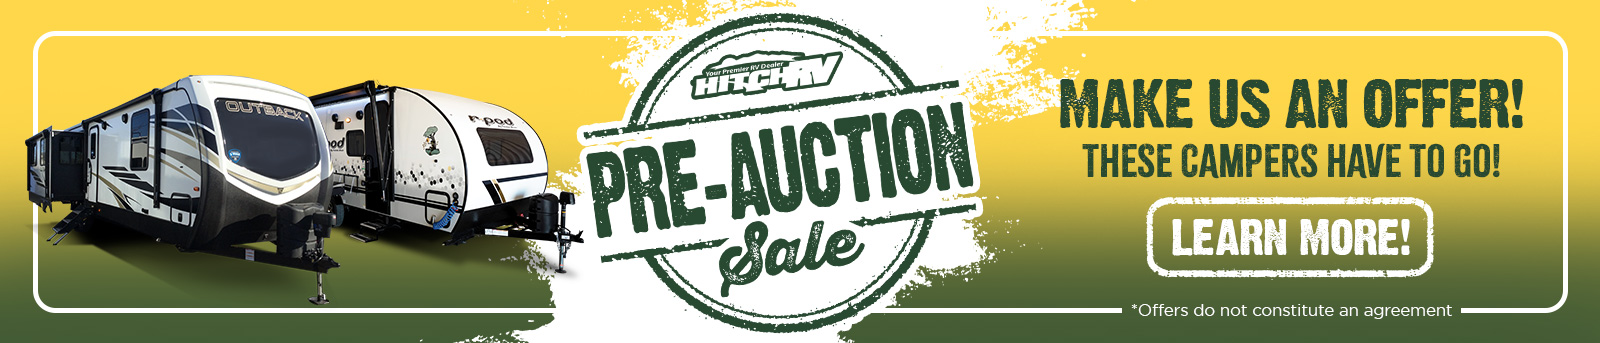 pre auction sale